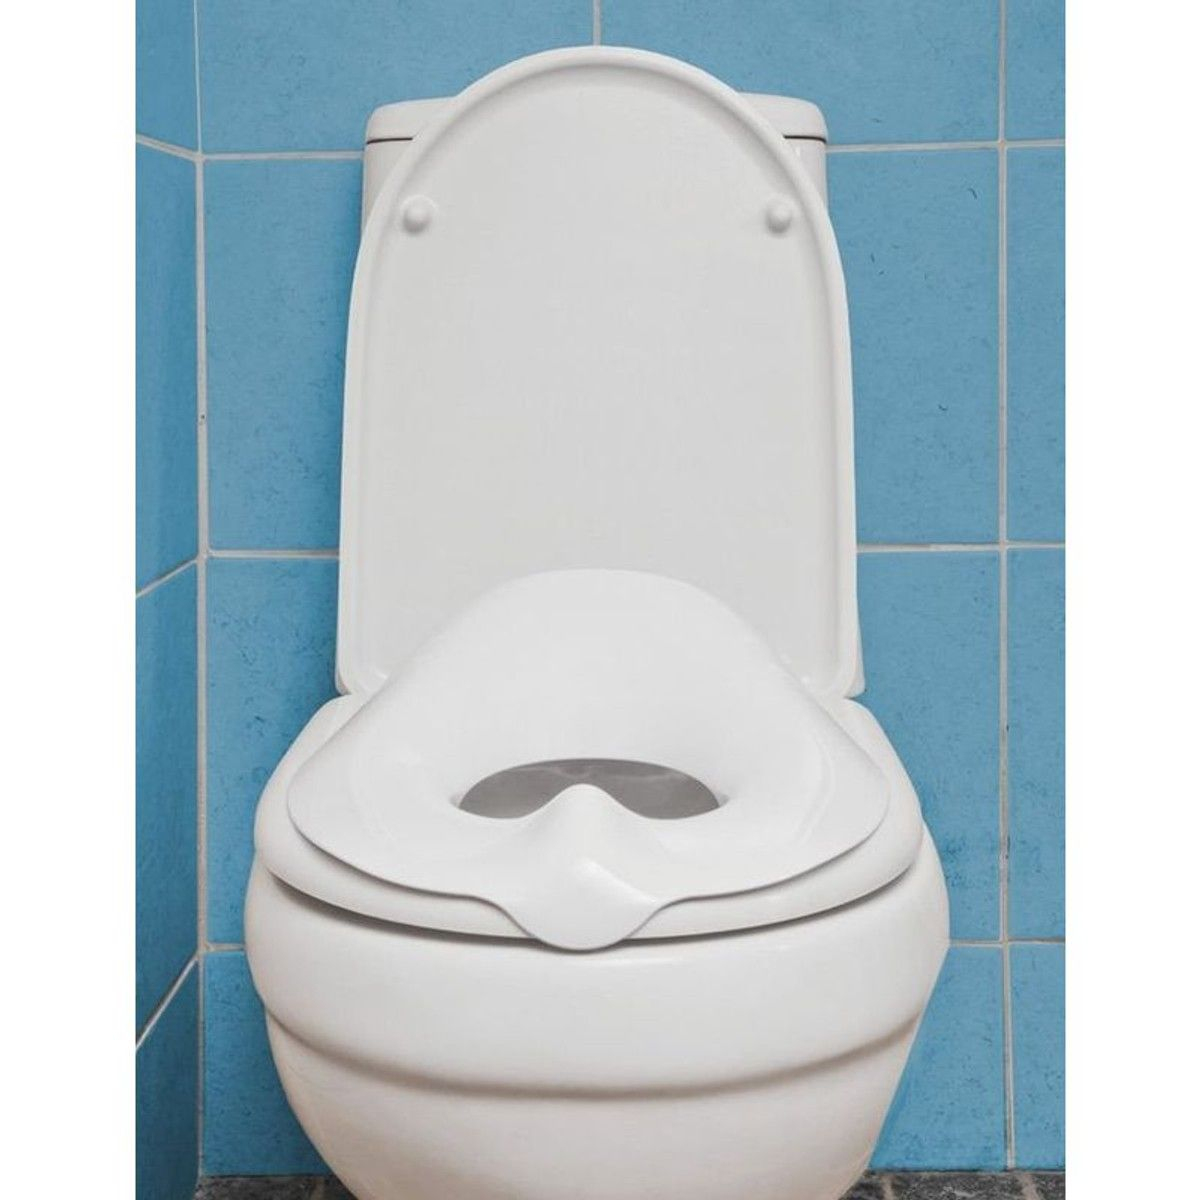 Réducteur Wc Universel pour Sans-Broyeur Toilet